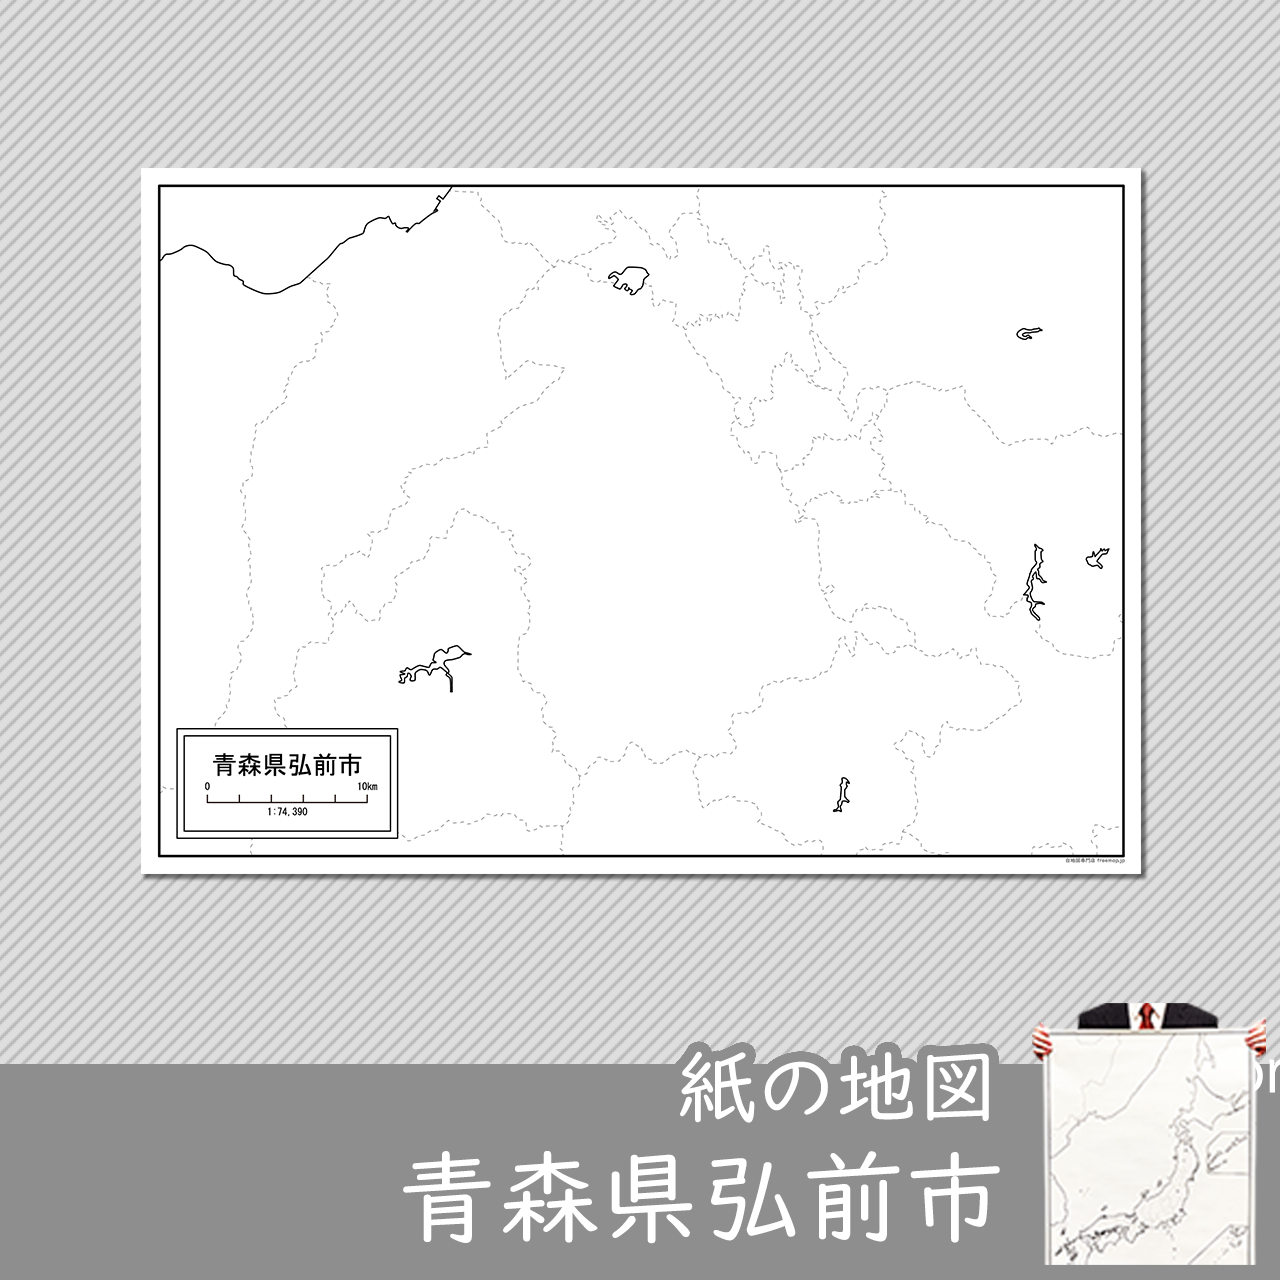 弘前市の紙の白地図のサムネイル